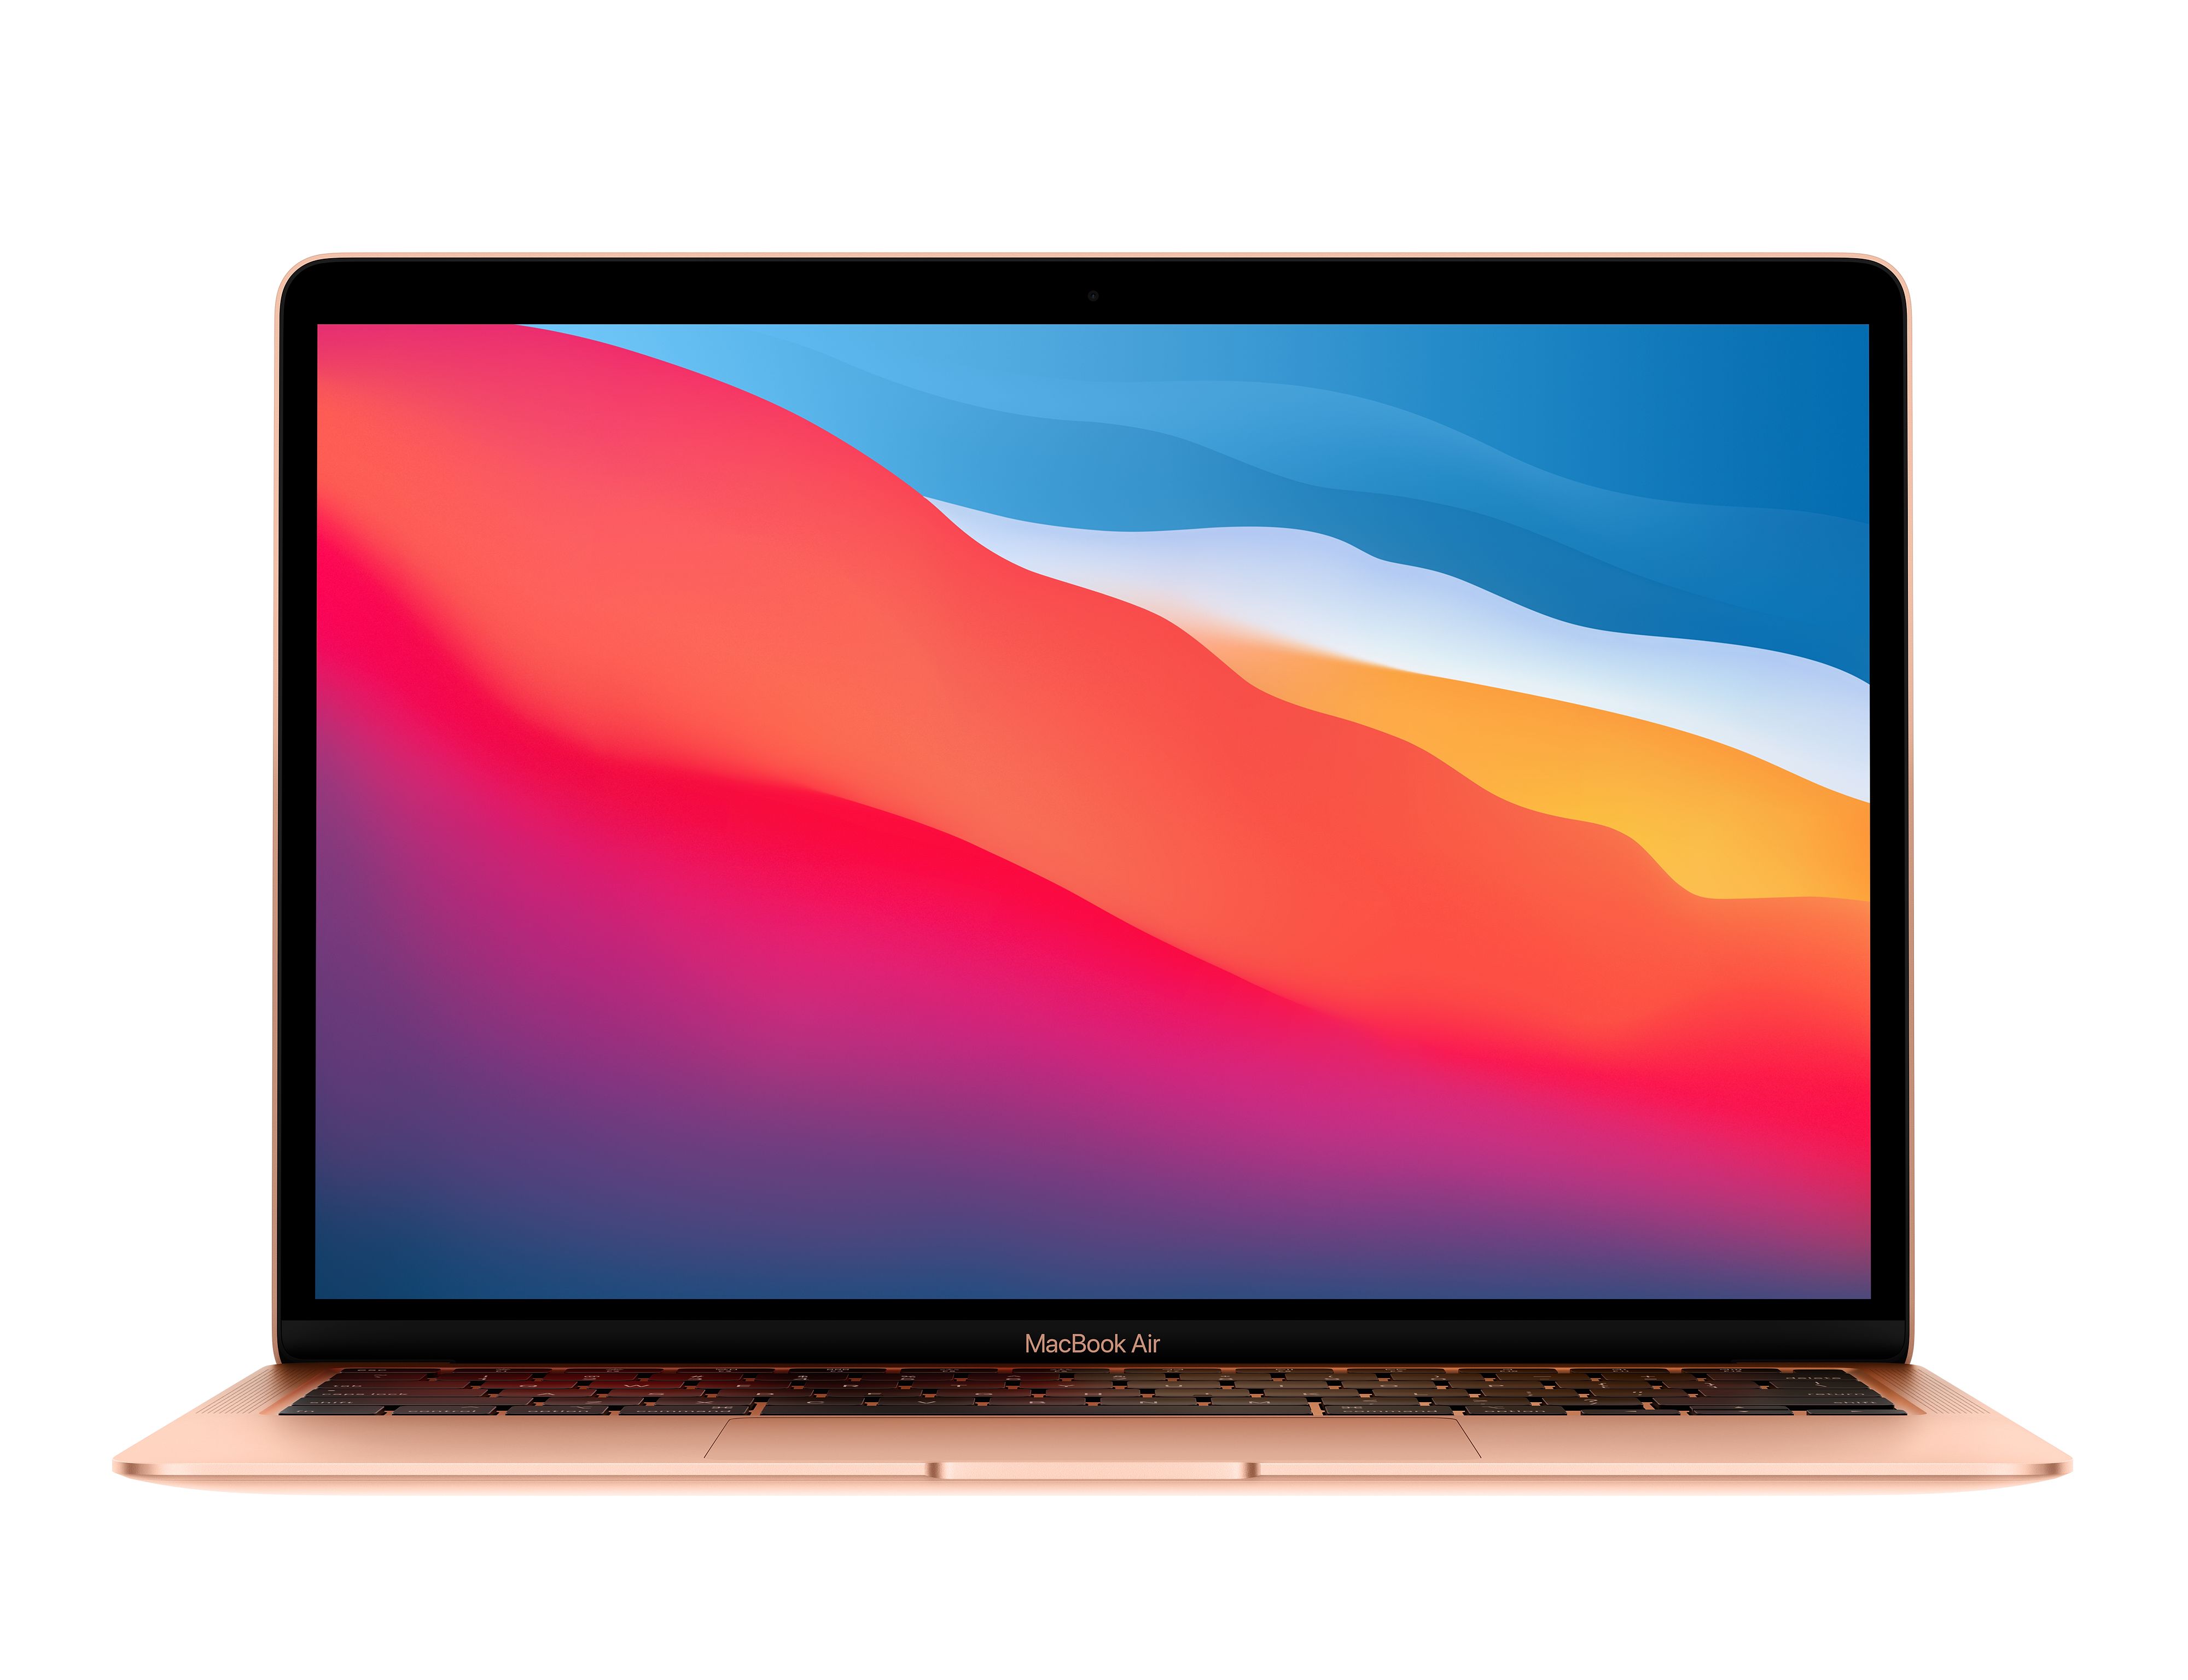 MacBook Air 2020 es lanzada por Apple